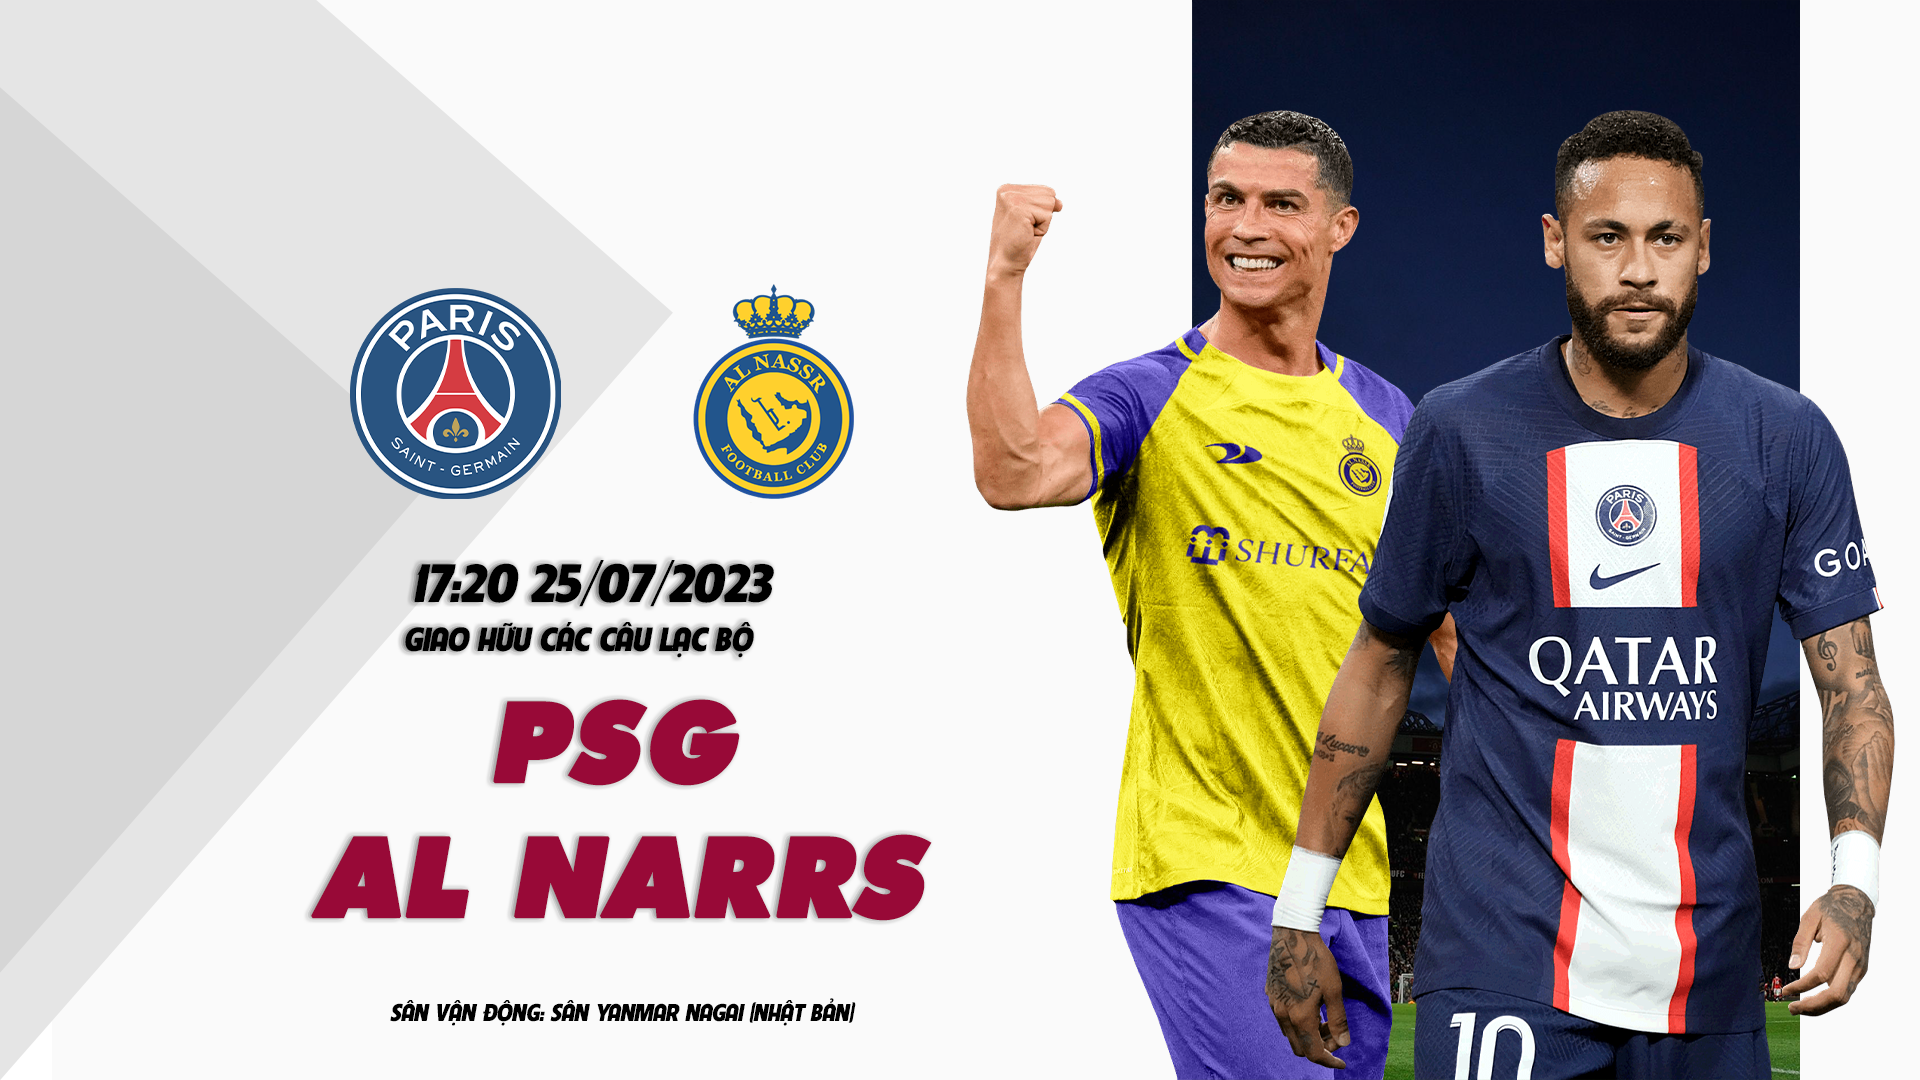 Nhận định PSG vs Al Nassr 17h20 ngày 24/07 (Giao Hữu Các Câu Lạc Bộ)